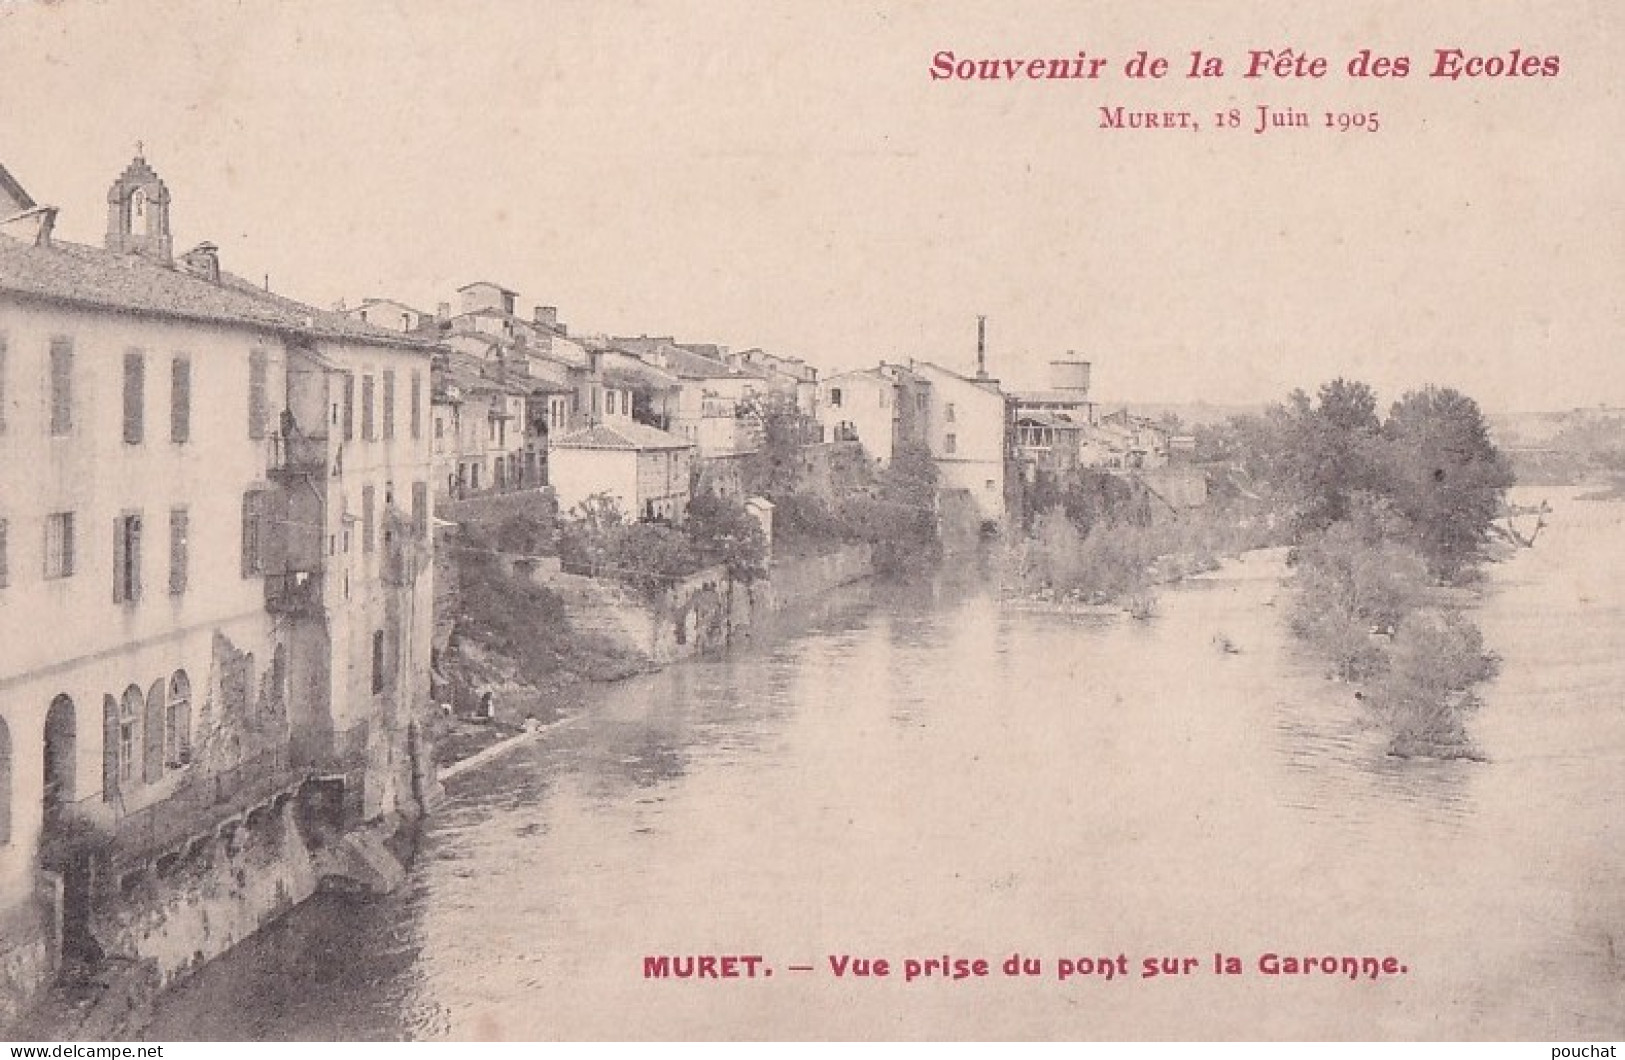 A15-31) MURET - SOUVENIR DE LA FETE DES ECOLES  18 JUIN 1905 - VUE PRISE DU PONT SUR LA GARONNE - ( 2 SCANS ) - Muret